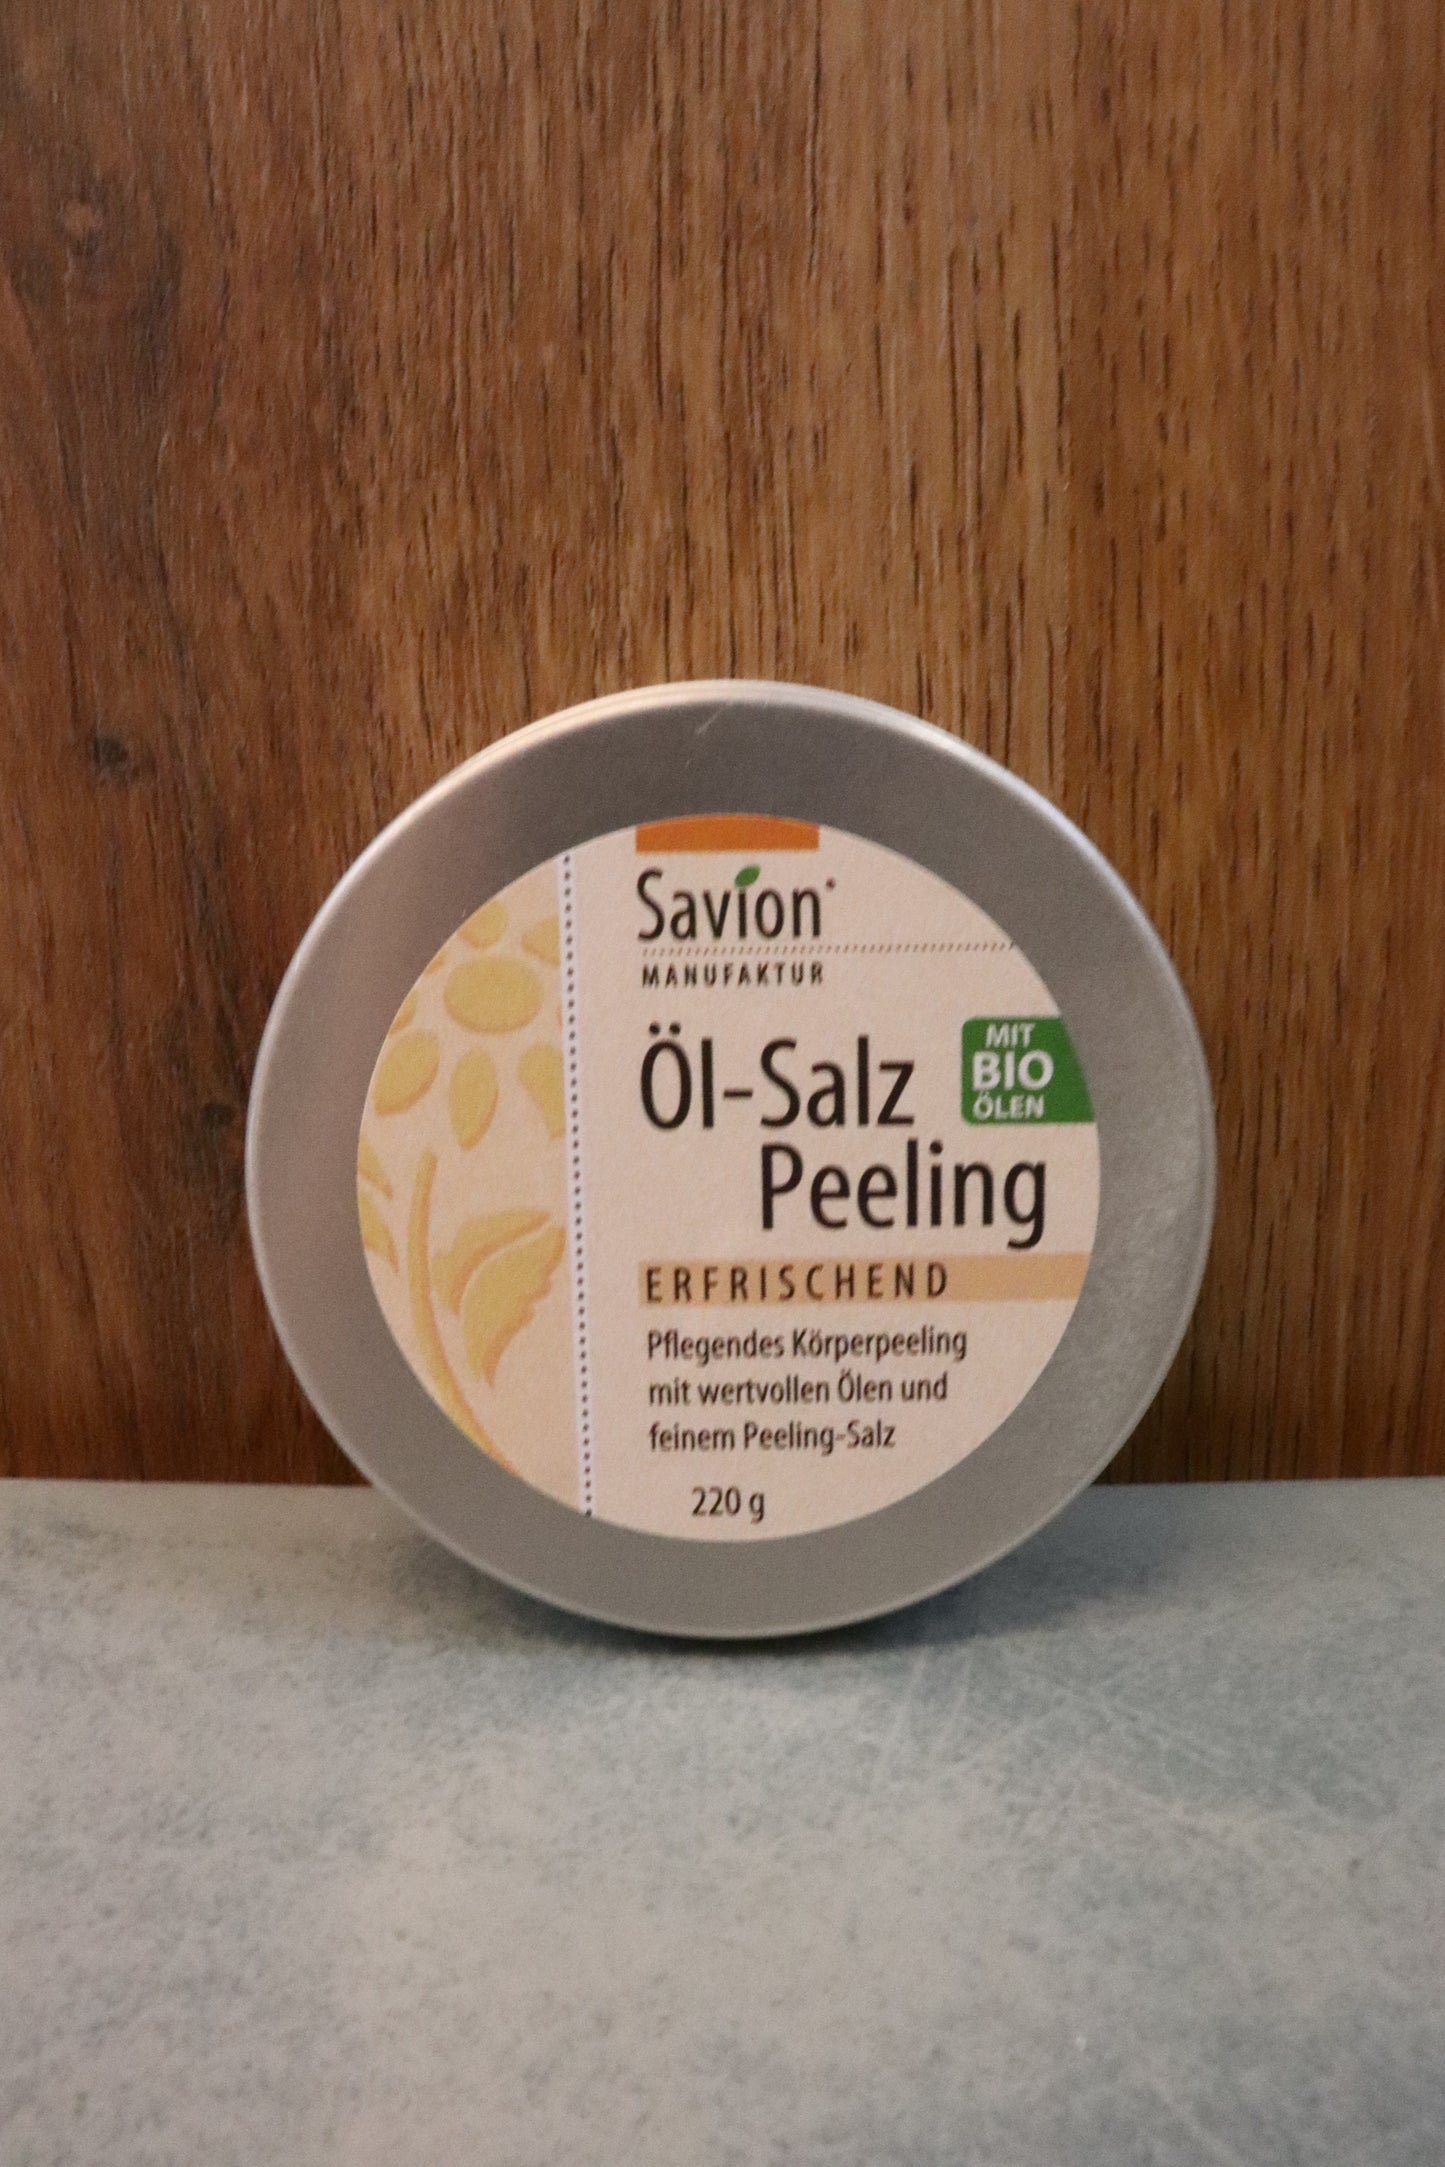 Öl-Salz Peeling erfrischend 220g, Savion